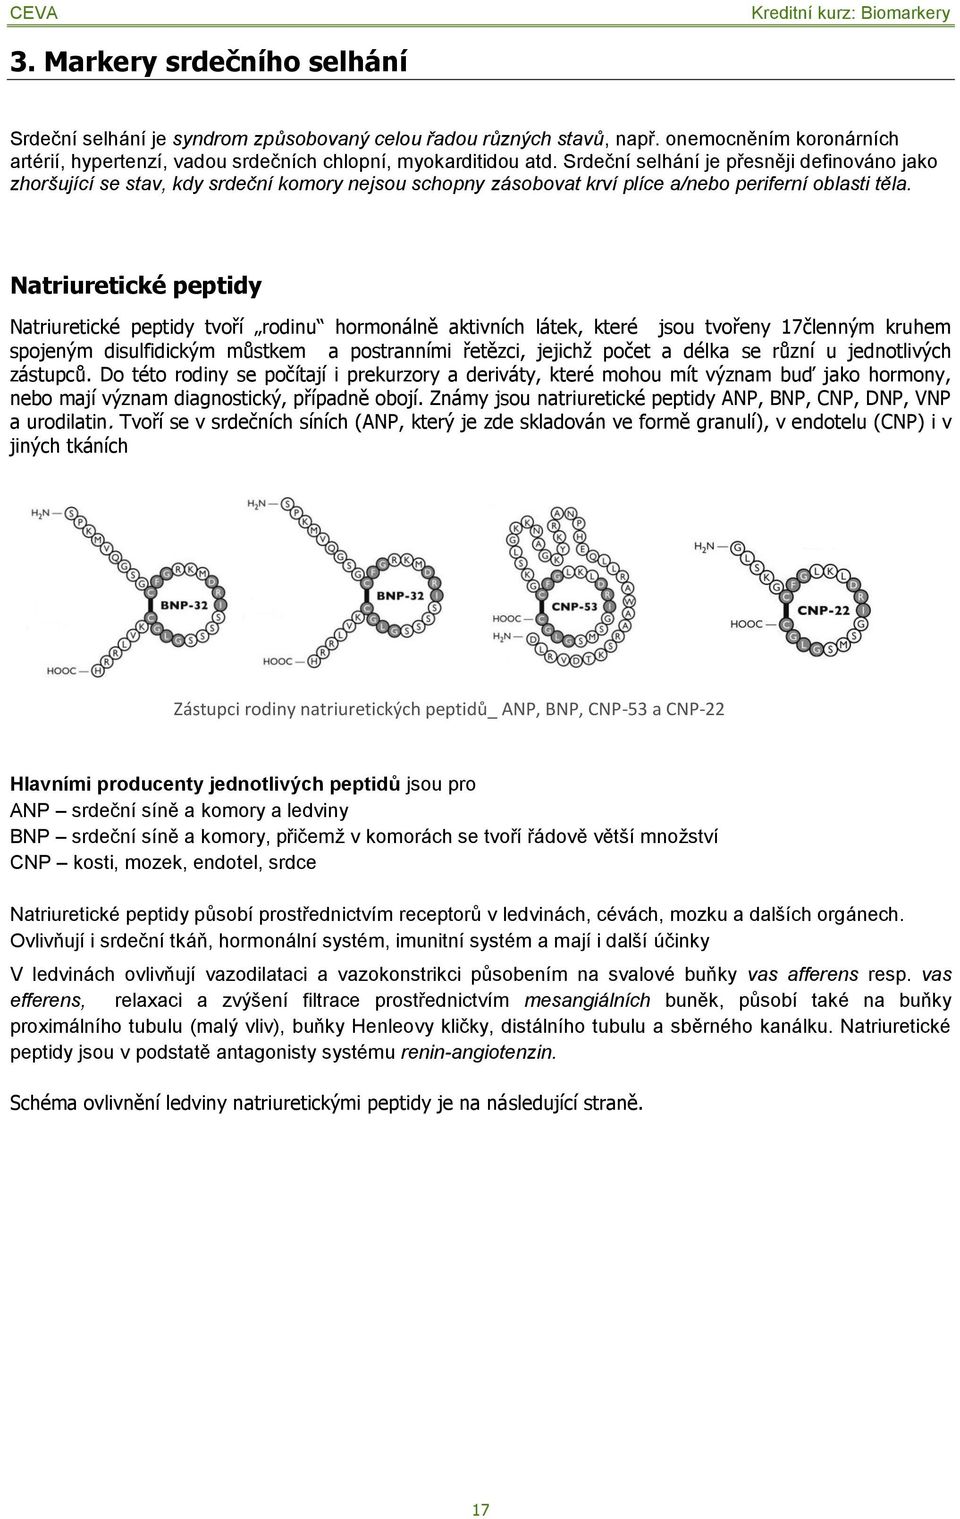 Natriuretické peptidy Natriuretické peptidy tvoří rodinu hormonálně aktivních látek, které jsou tvořeny 17členným kruhem spojeným disulfidickým můstkem a postranními řetězci, jejichţ počet a délka se